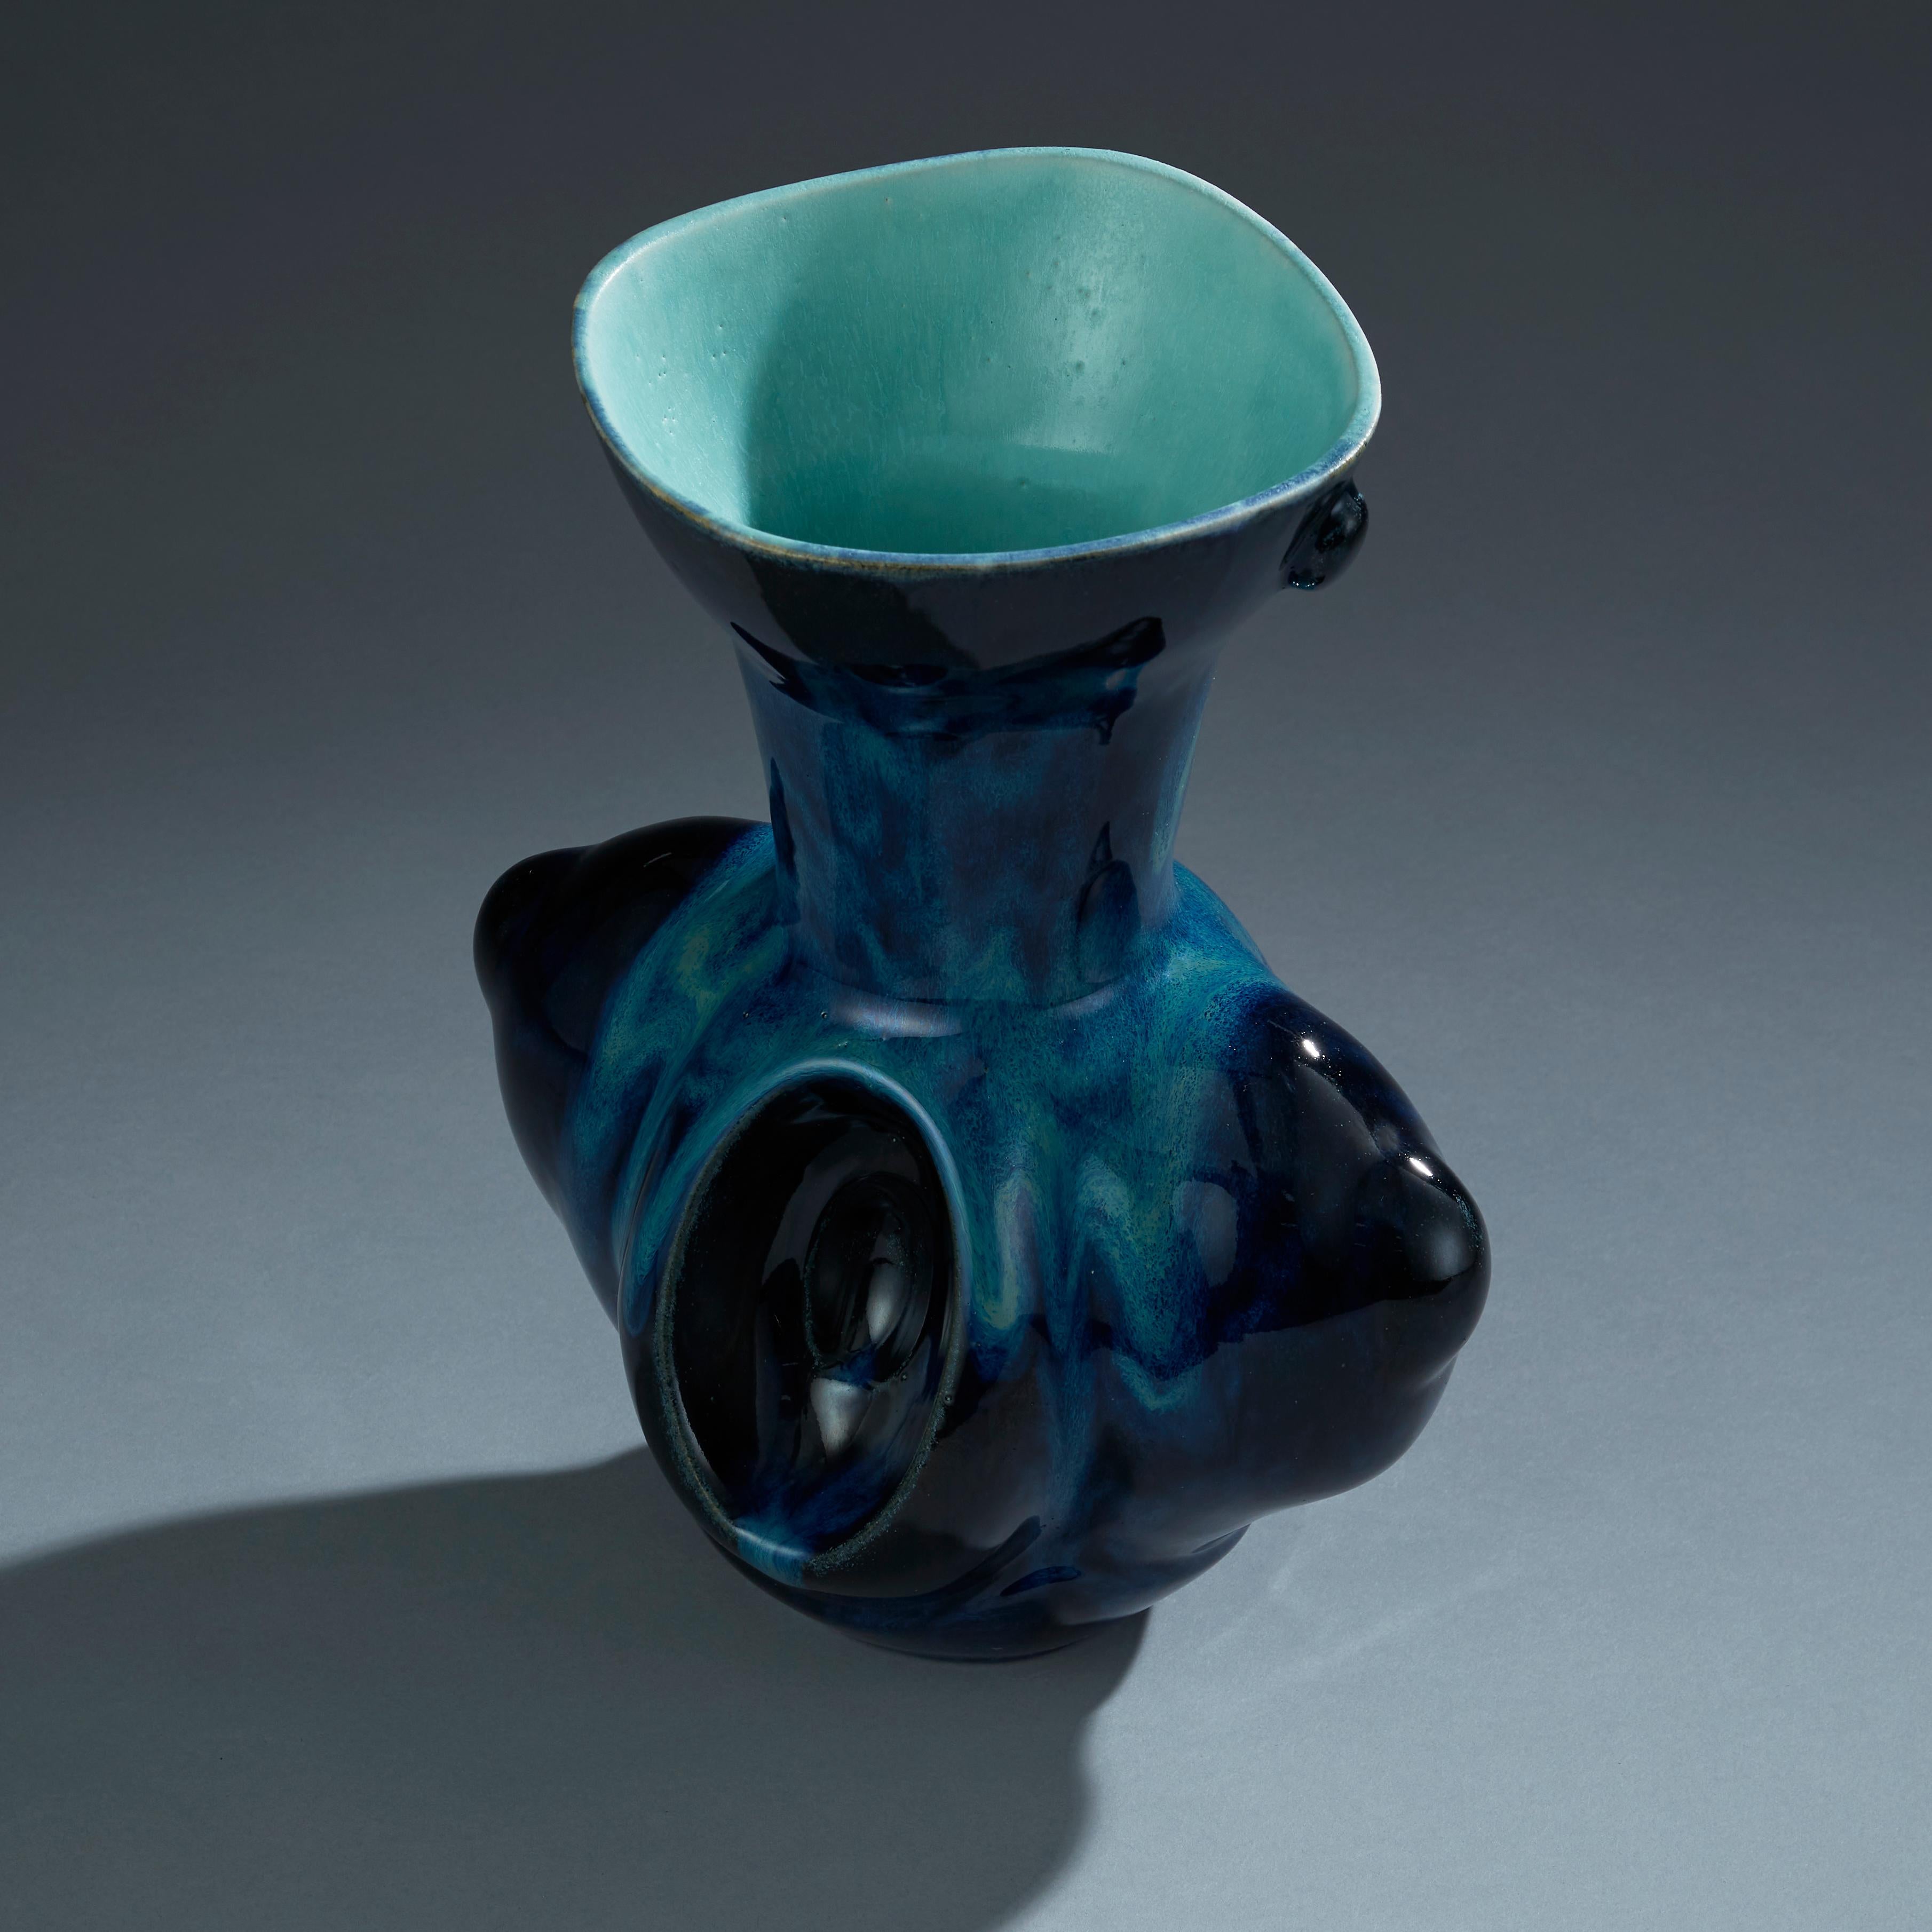 Baroque Deep Blue Ceramic Vase Contemporary 21st Century Italian Unique Piece